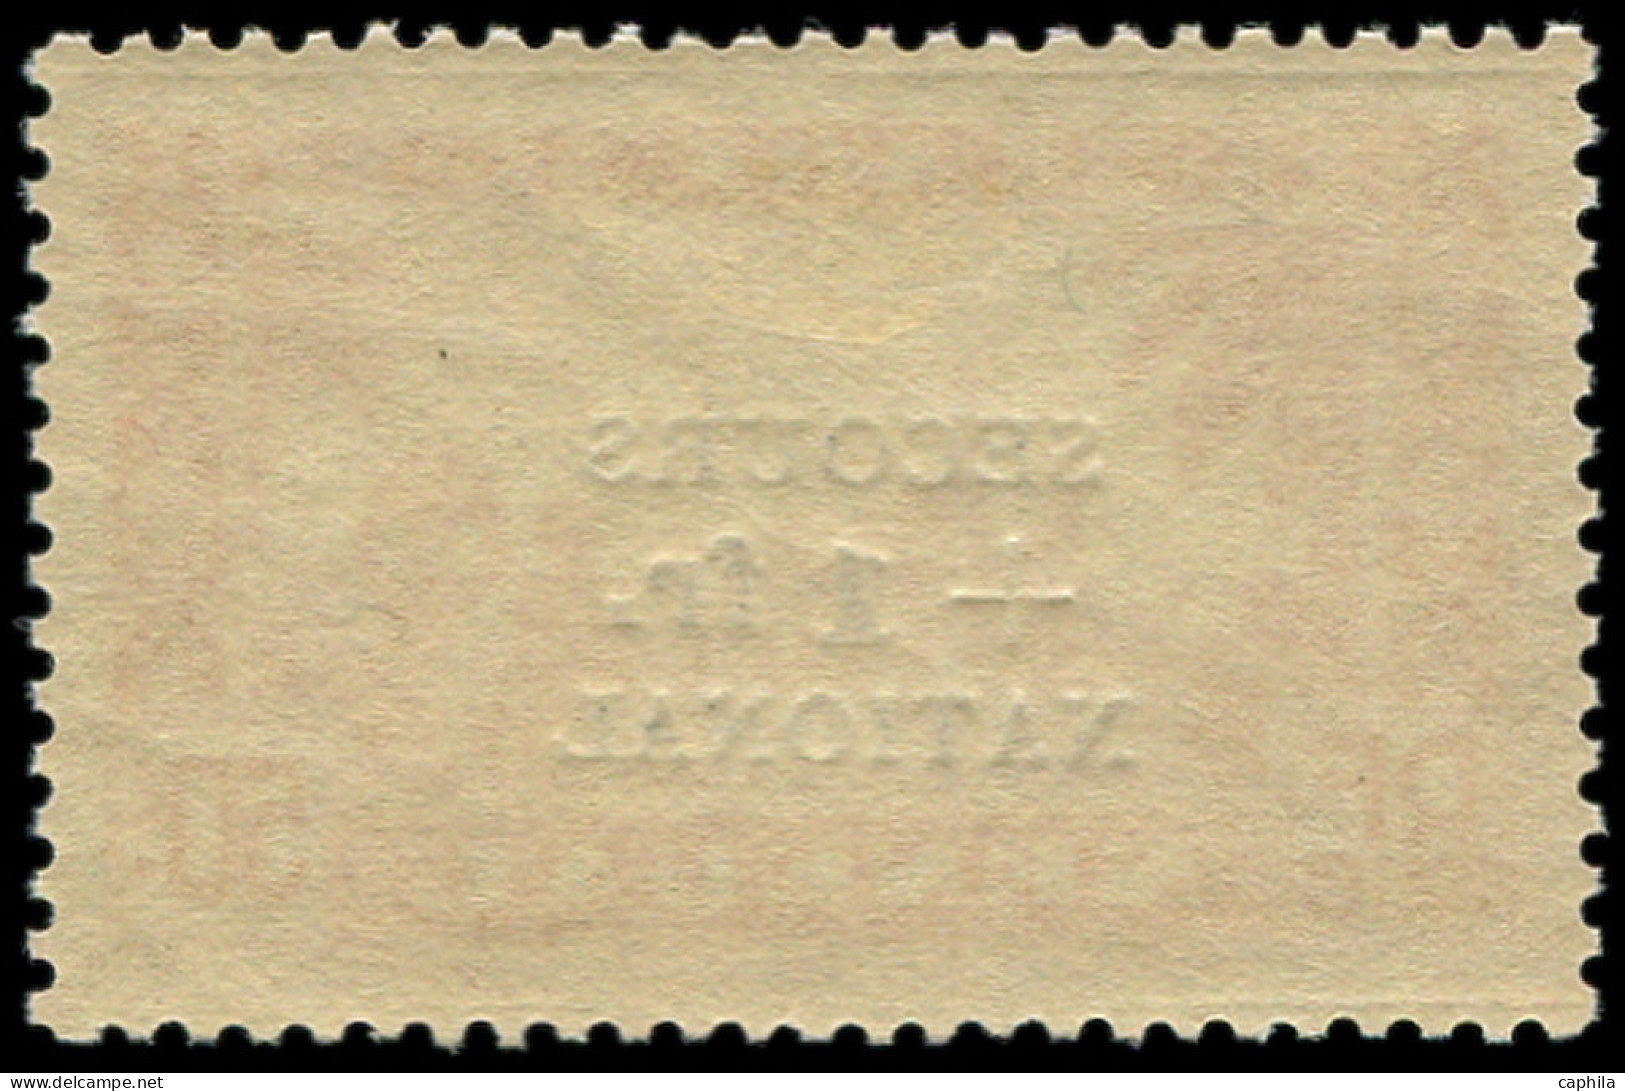 * SENEGAL - Poste - 173, "secours" Légèrement Doublé: 1f. S. 50c. Rouge - Unused Stamps